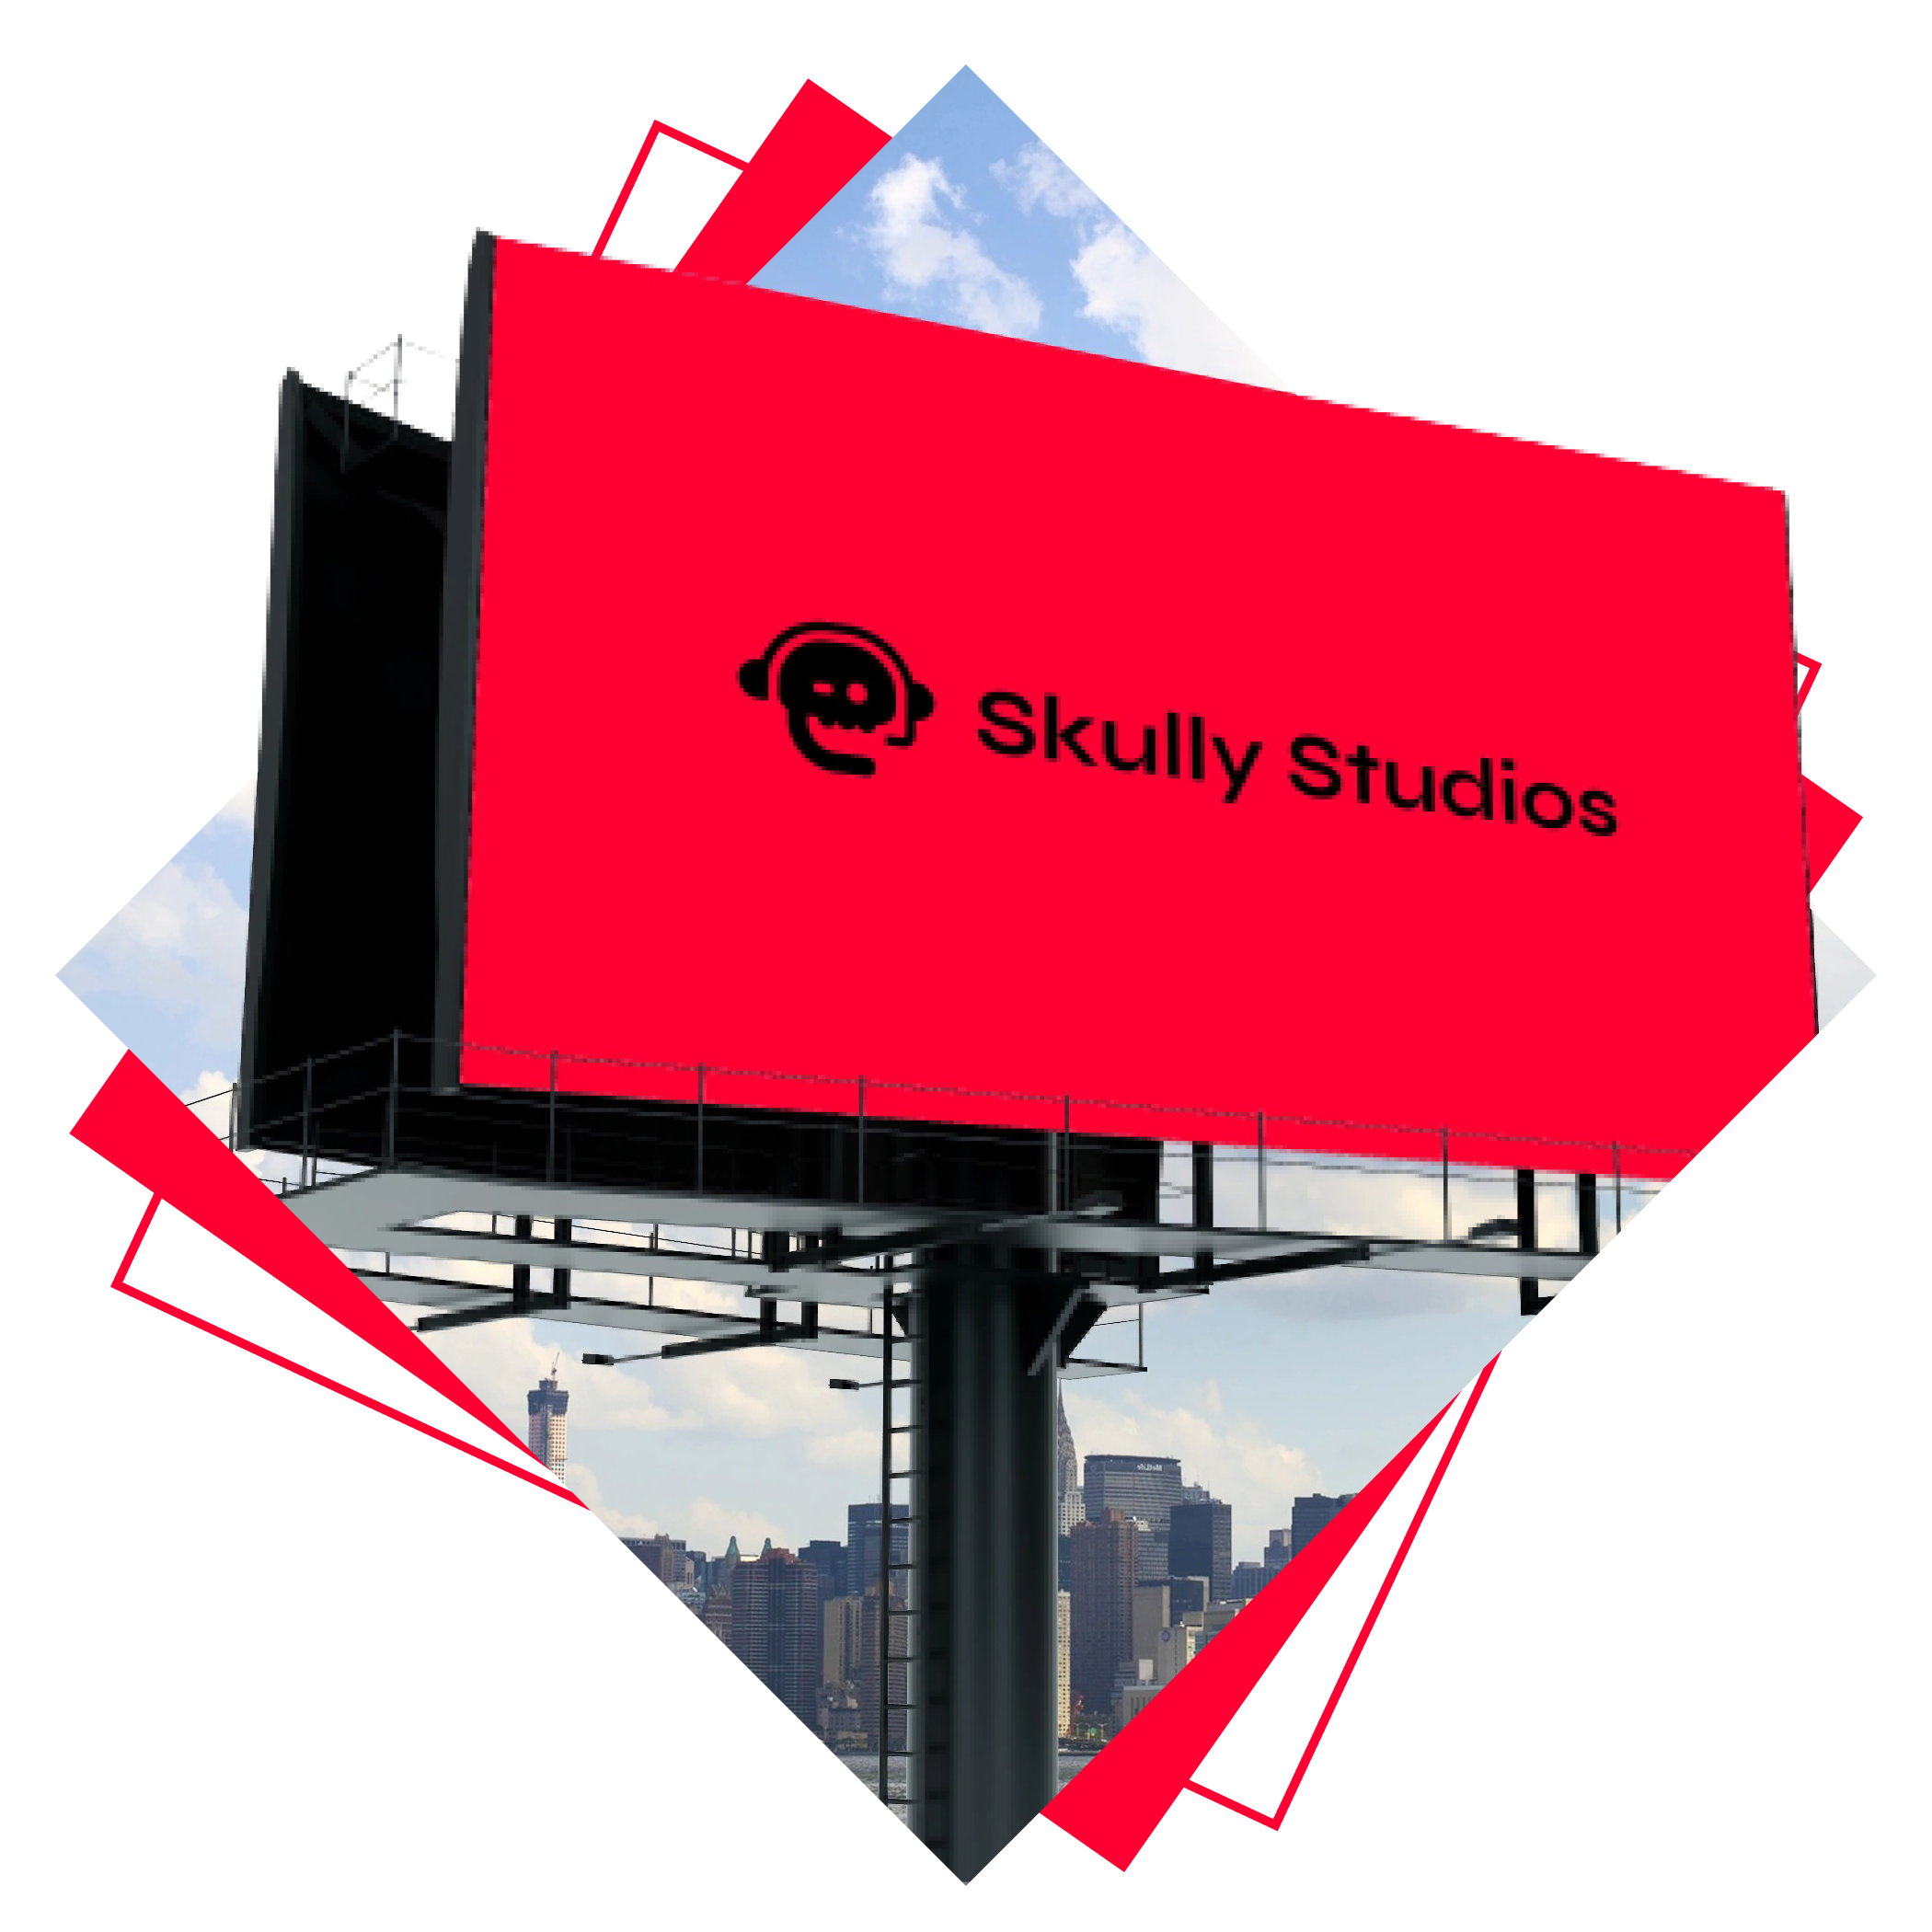 Skully Studios logo on a billboard.